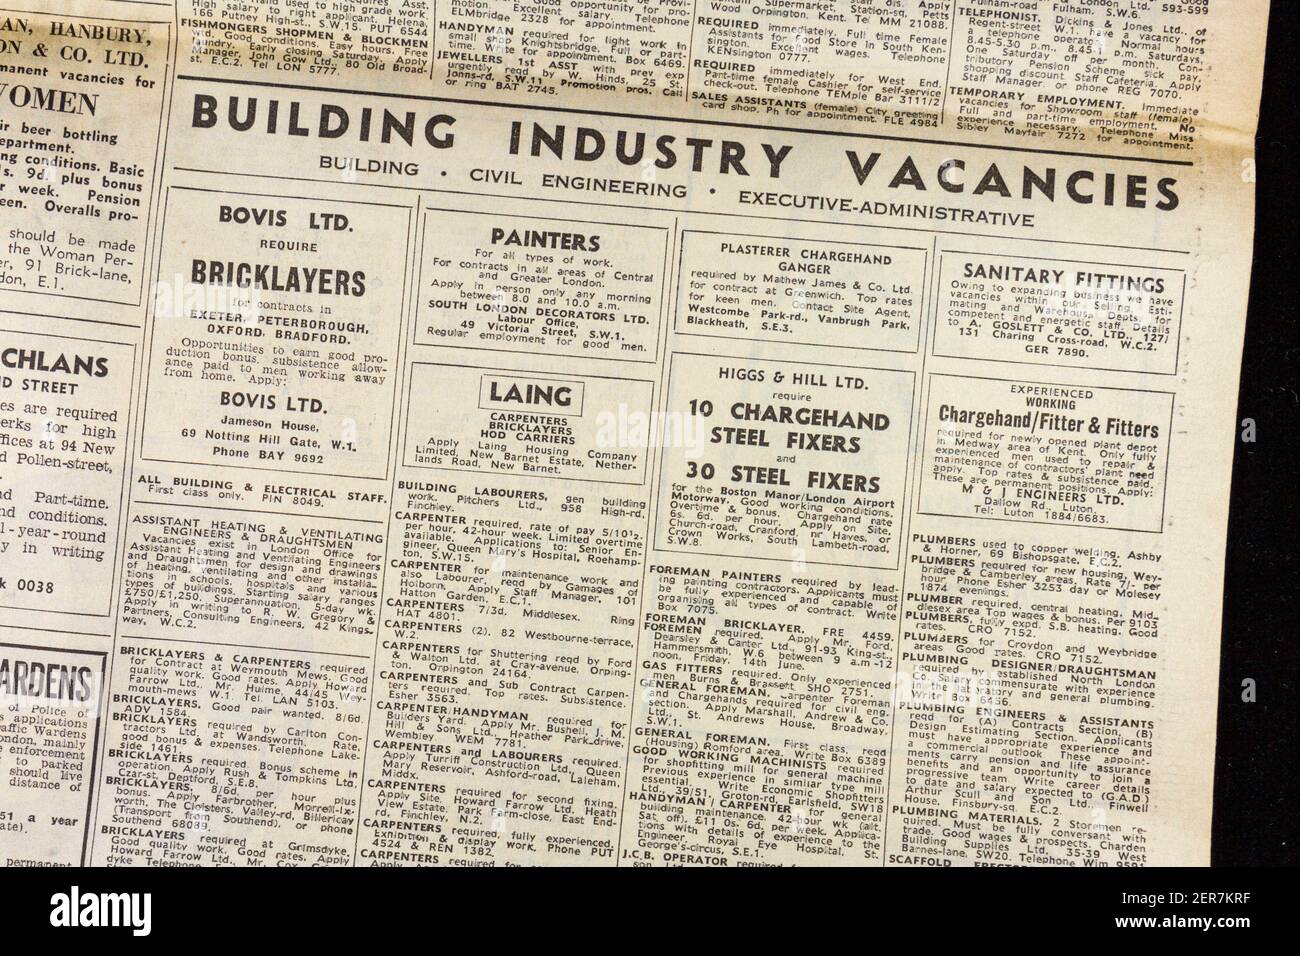 Werbung für Gebäude, Industrie Stellenangebote in der Evening News Zeitung (Donnerstag, 13th. Juni 1963), London, Großbritannien. Stockfoto